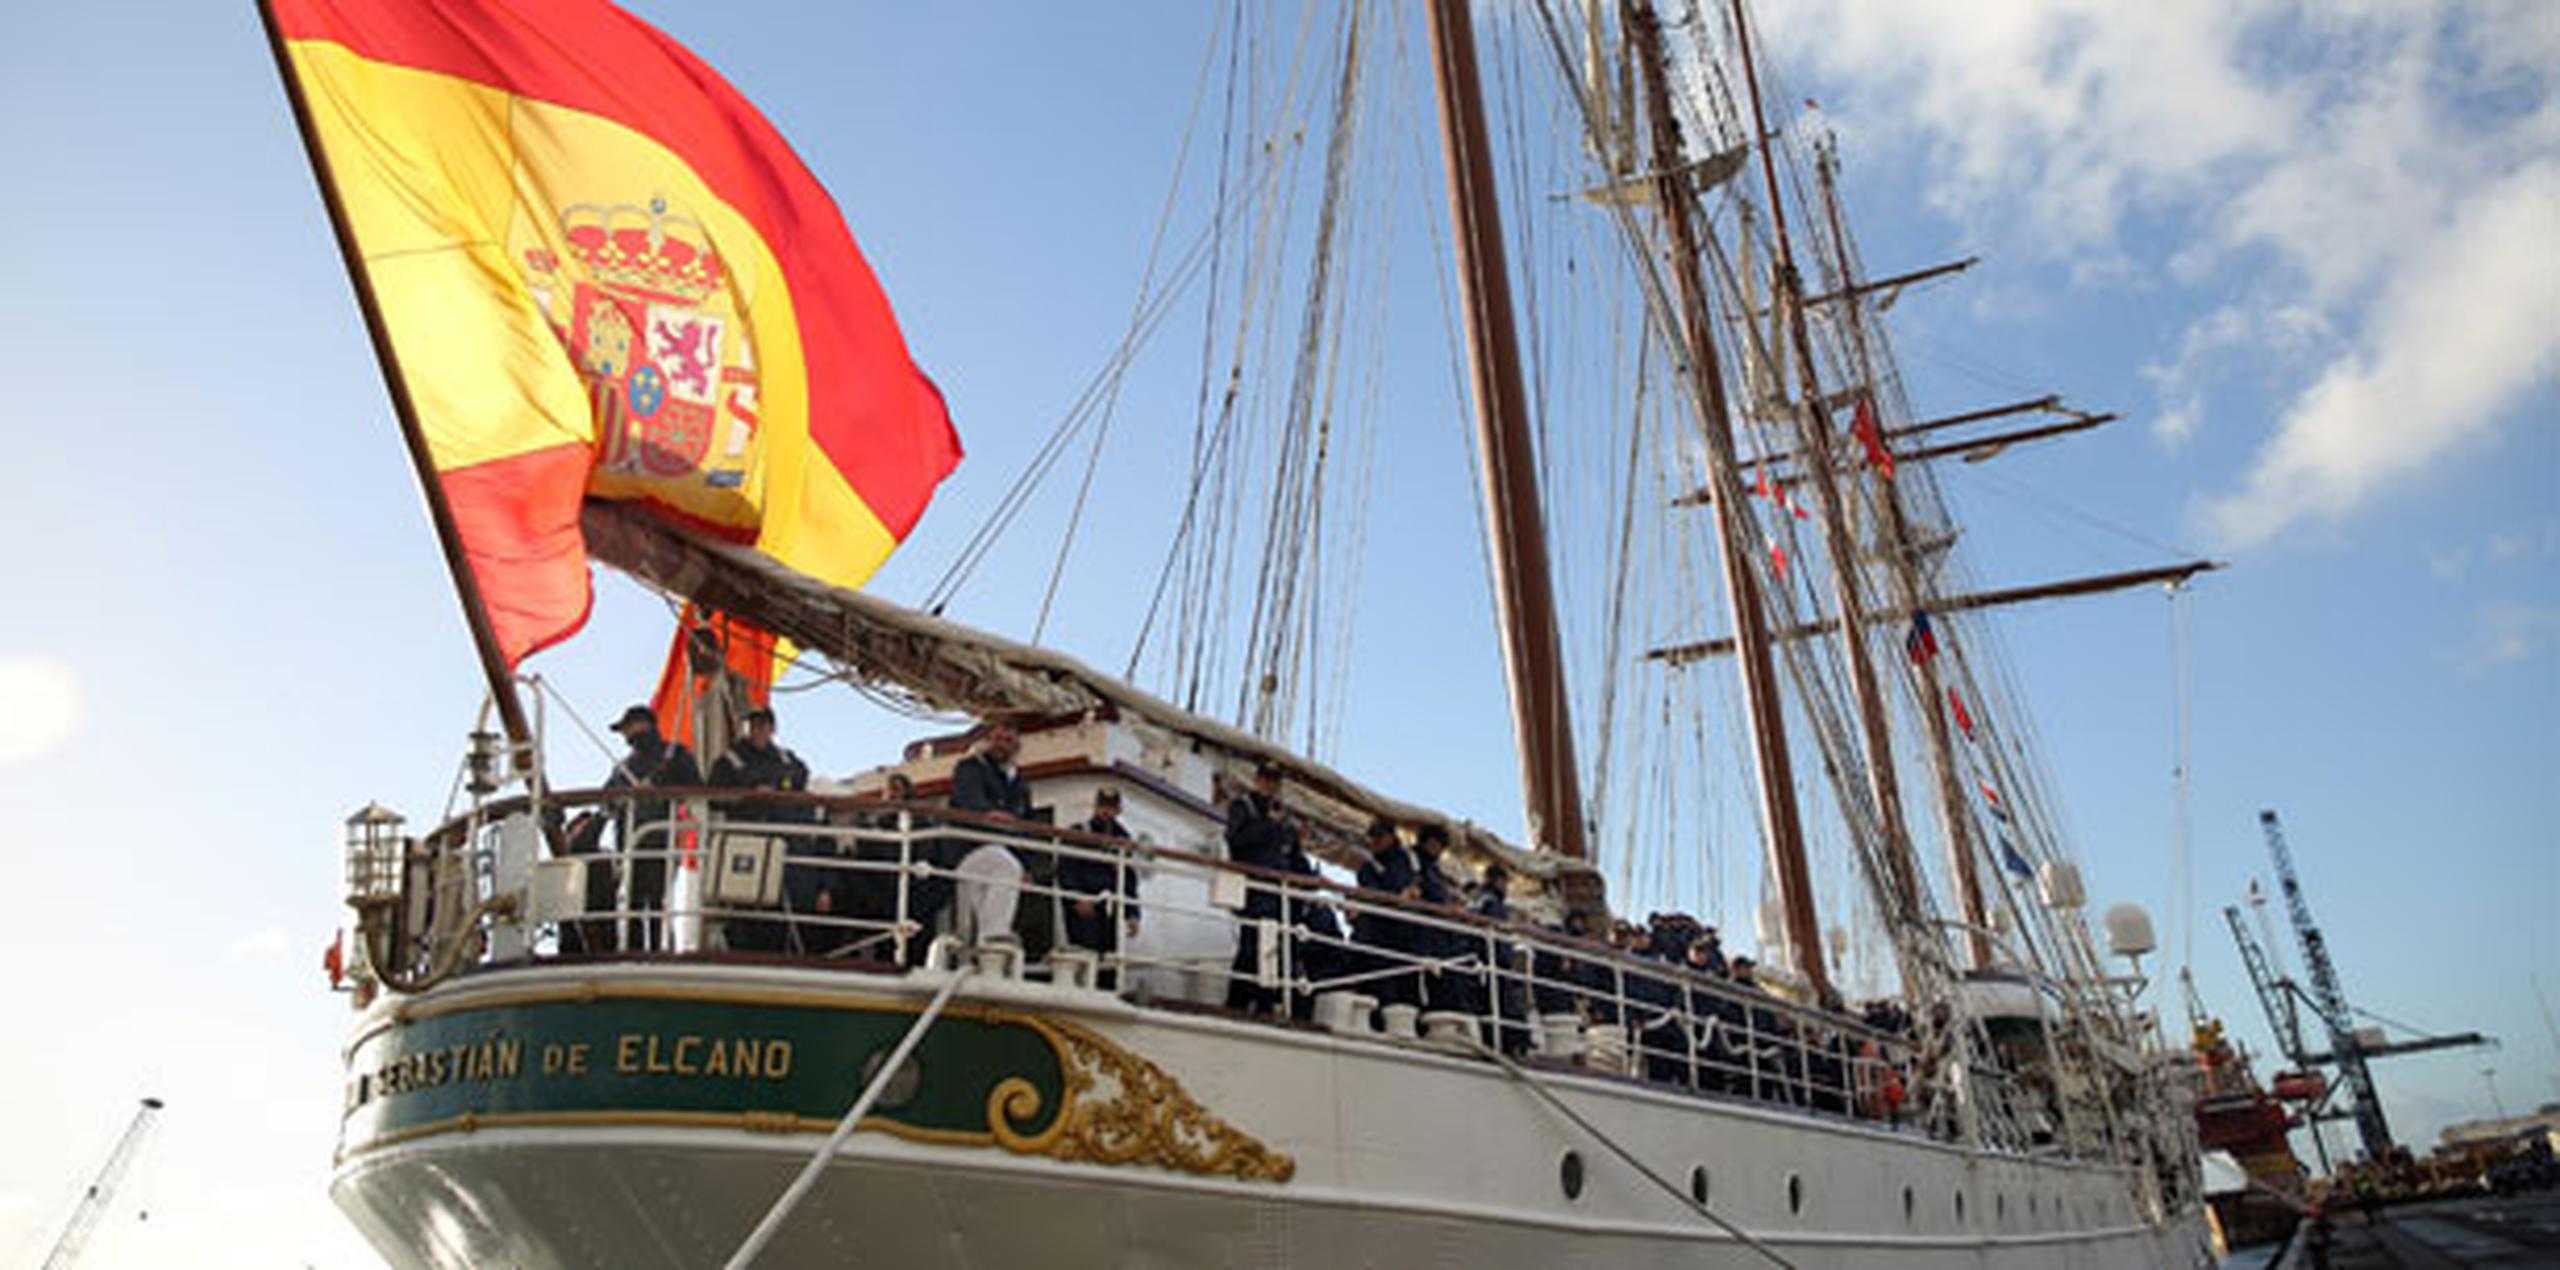 Construido en los astilleros "Echevarrieta y Larrinaga" de Cádiz, el buque escuela Juan Sebastián de Elcano fue botado un 5 de marzo de 1927 y entregado a la Armada el 17 de agosto de 1928, con lo que lleva surcando los mares del mundo 90 años. (EFE)